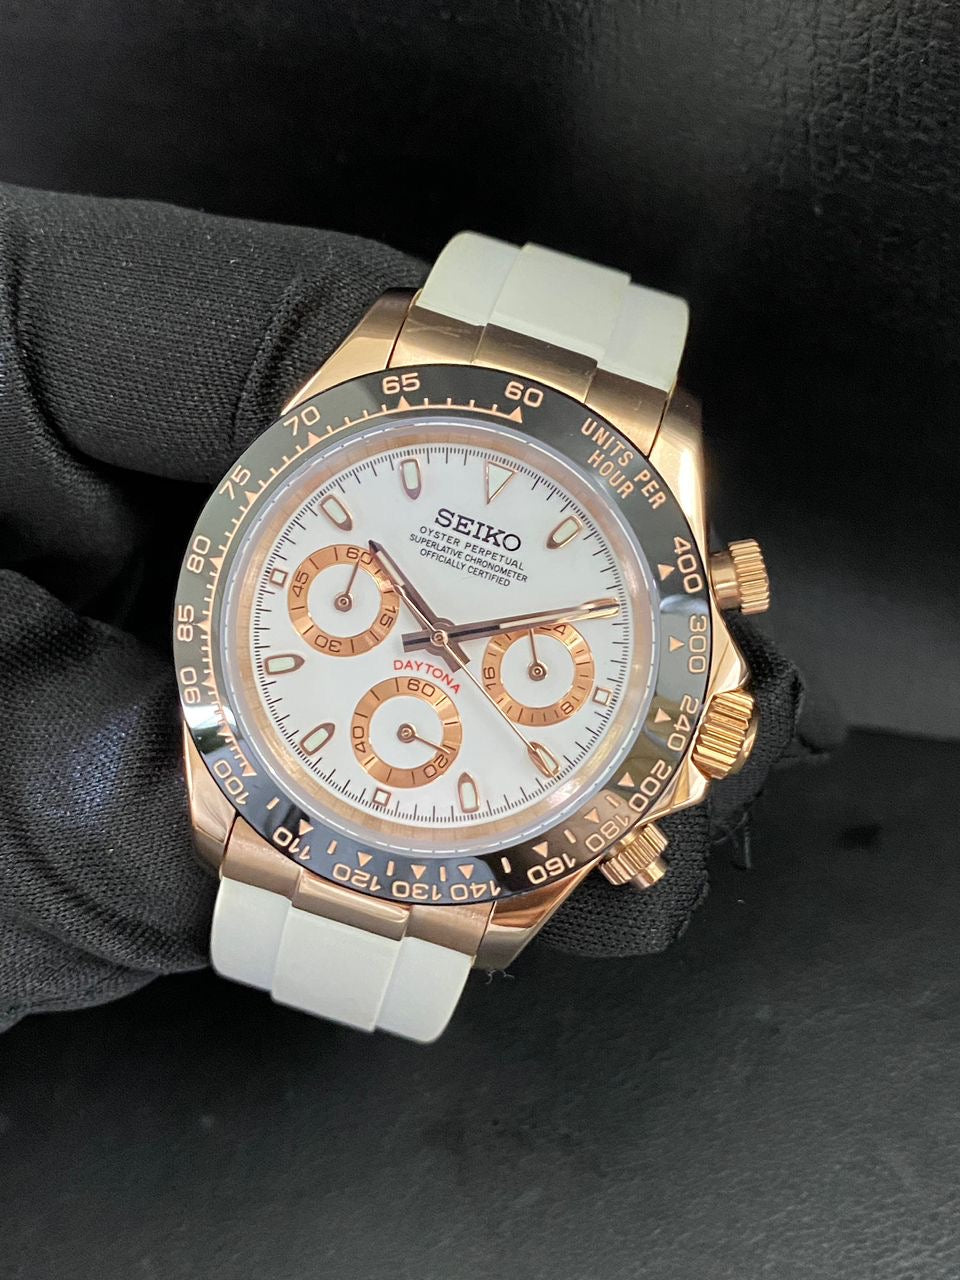 Seiko mod rosegold Daytona white dial VK63 chronograph watch